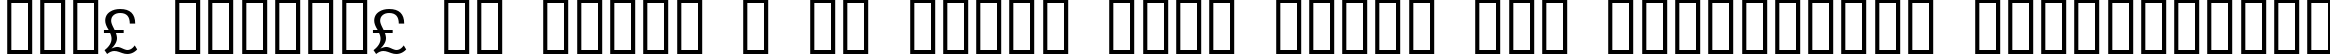 Пример написания шрифтом WP TypographicSymbols текста на украинском